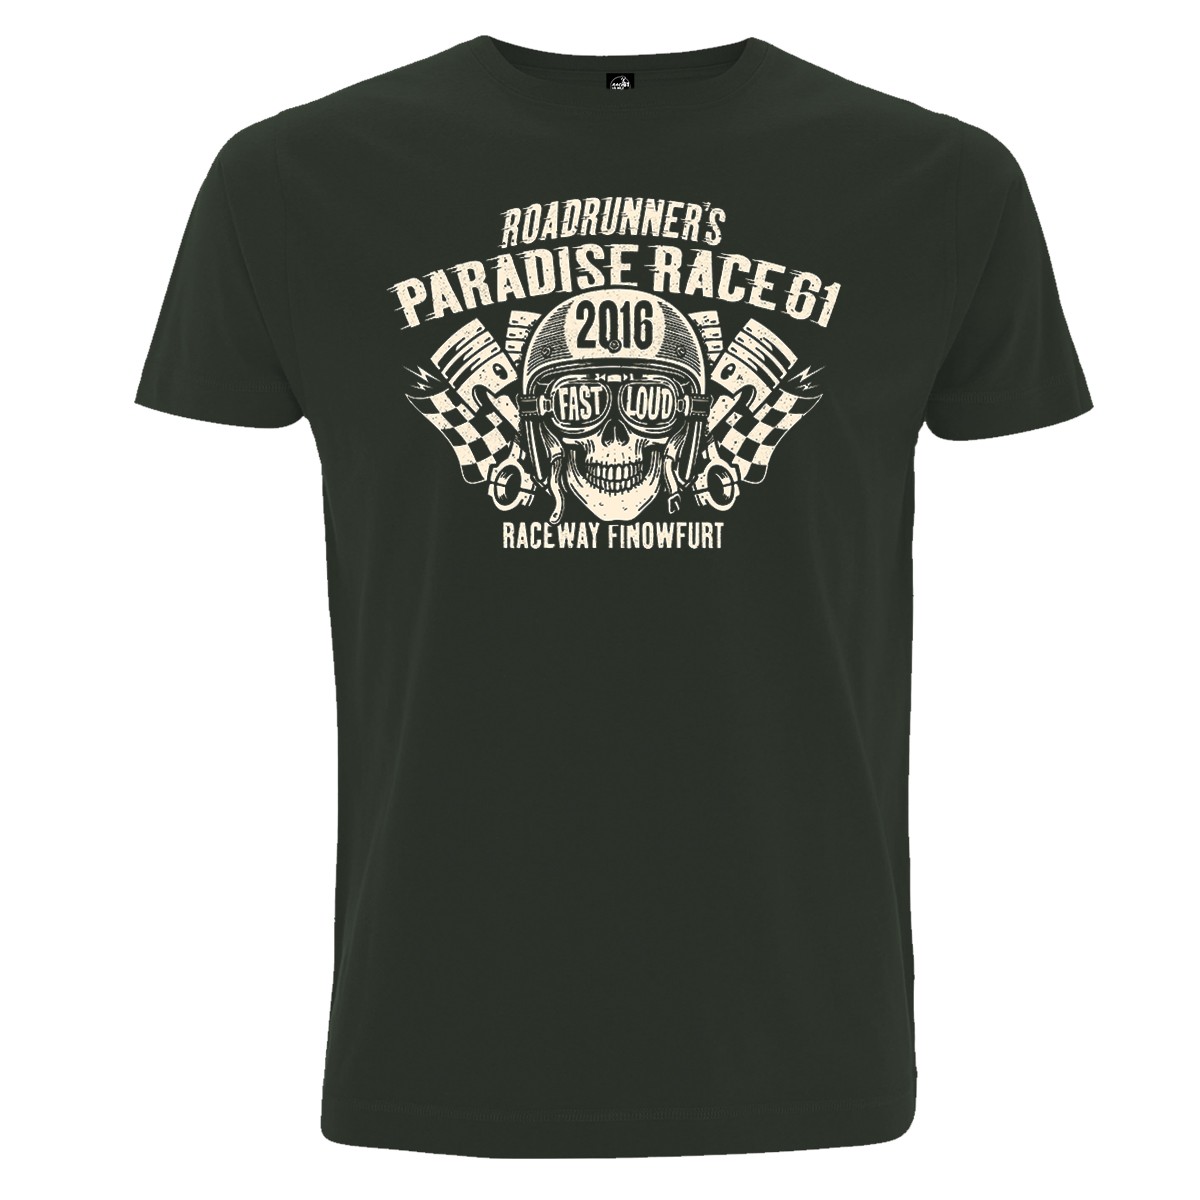 Race 61 T-Shirt Race 61 T-Shirt 2016 Charcoal